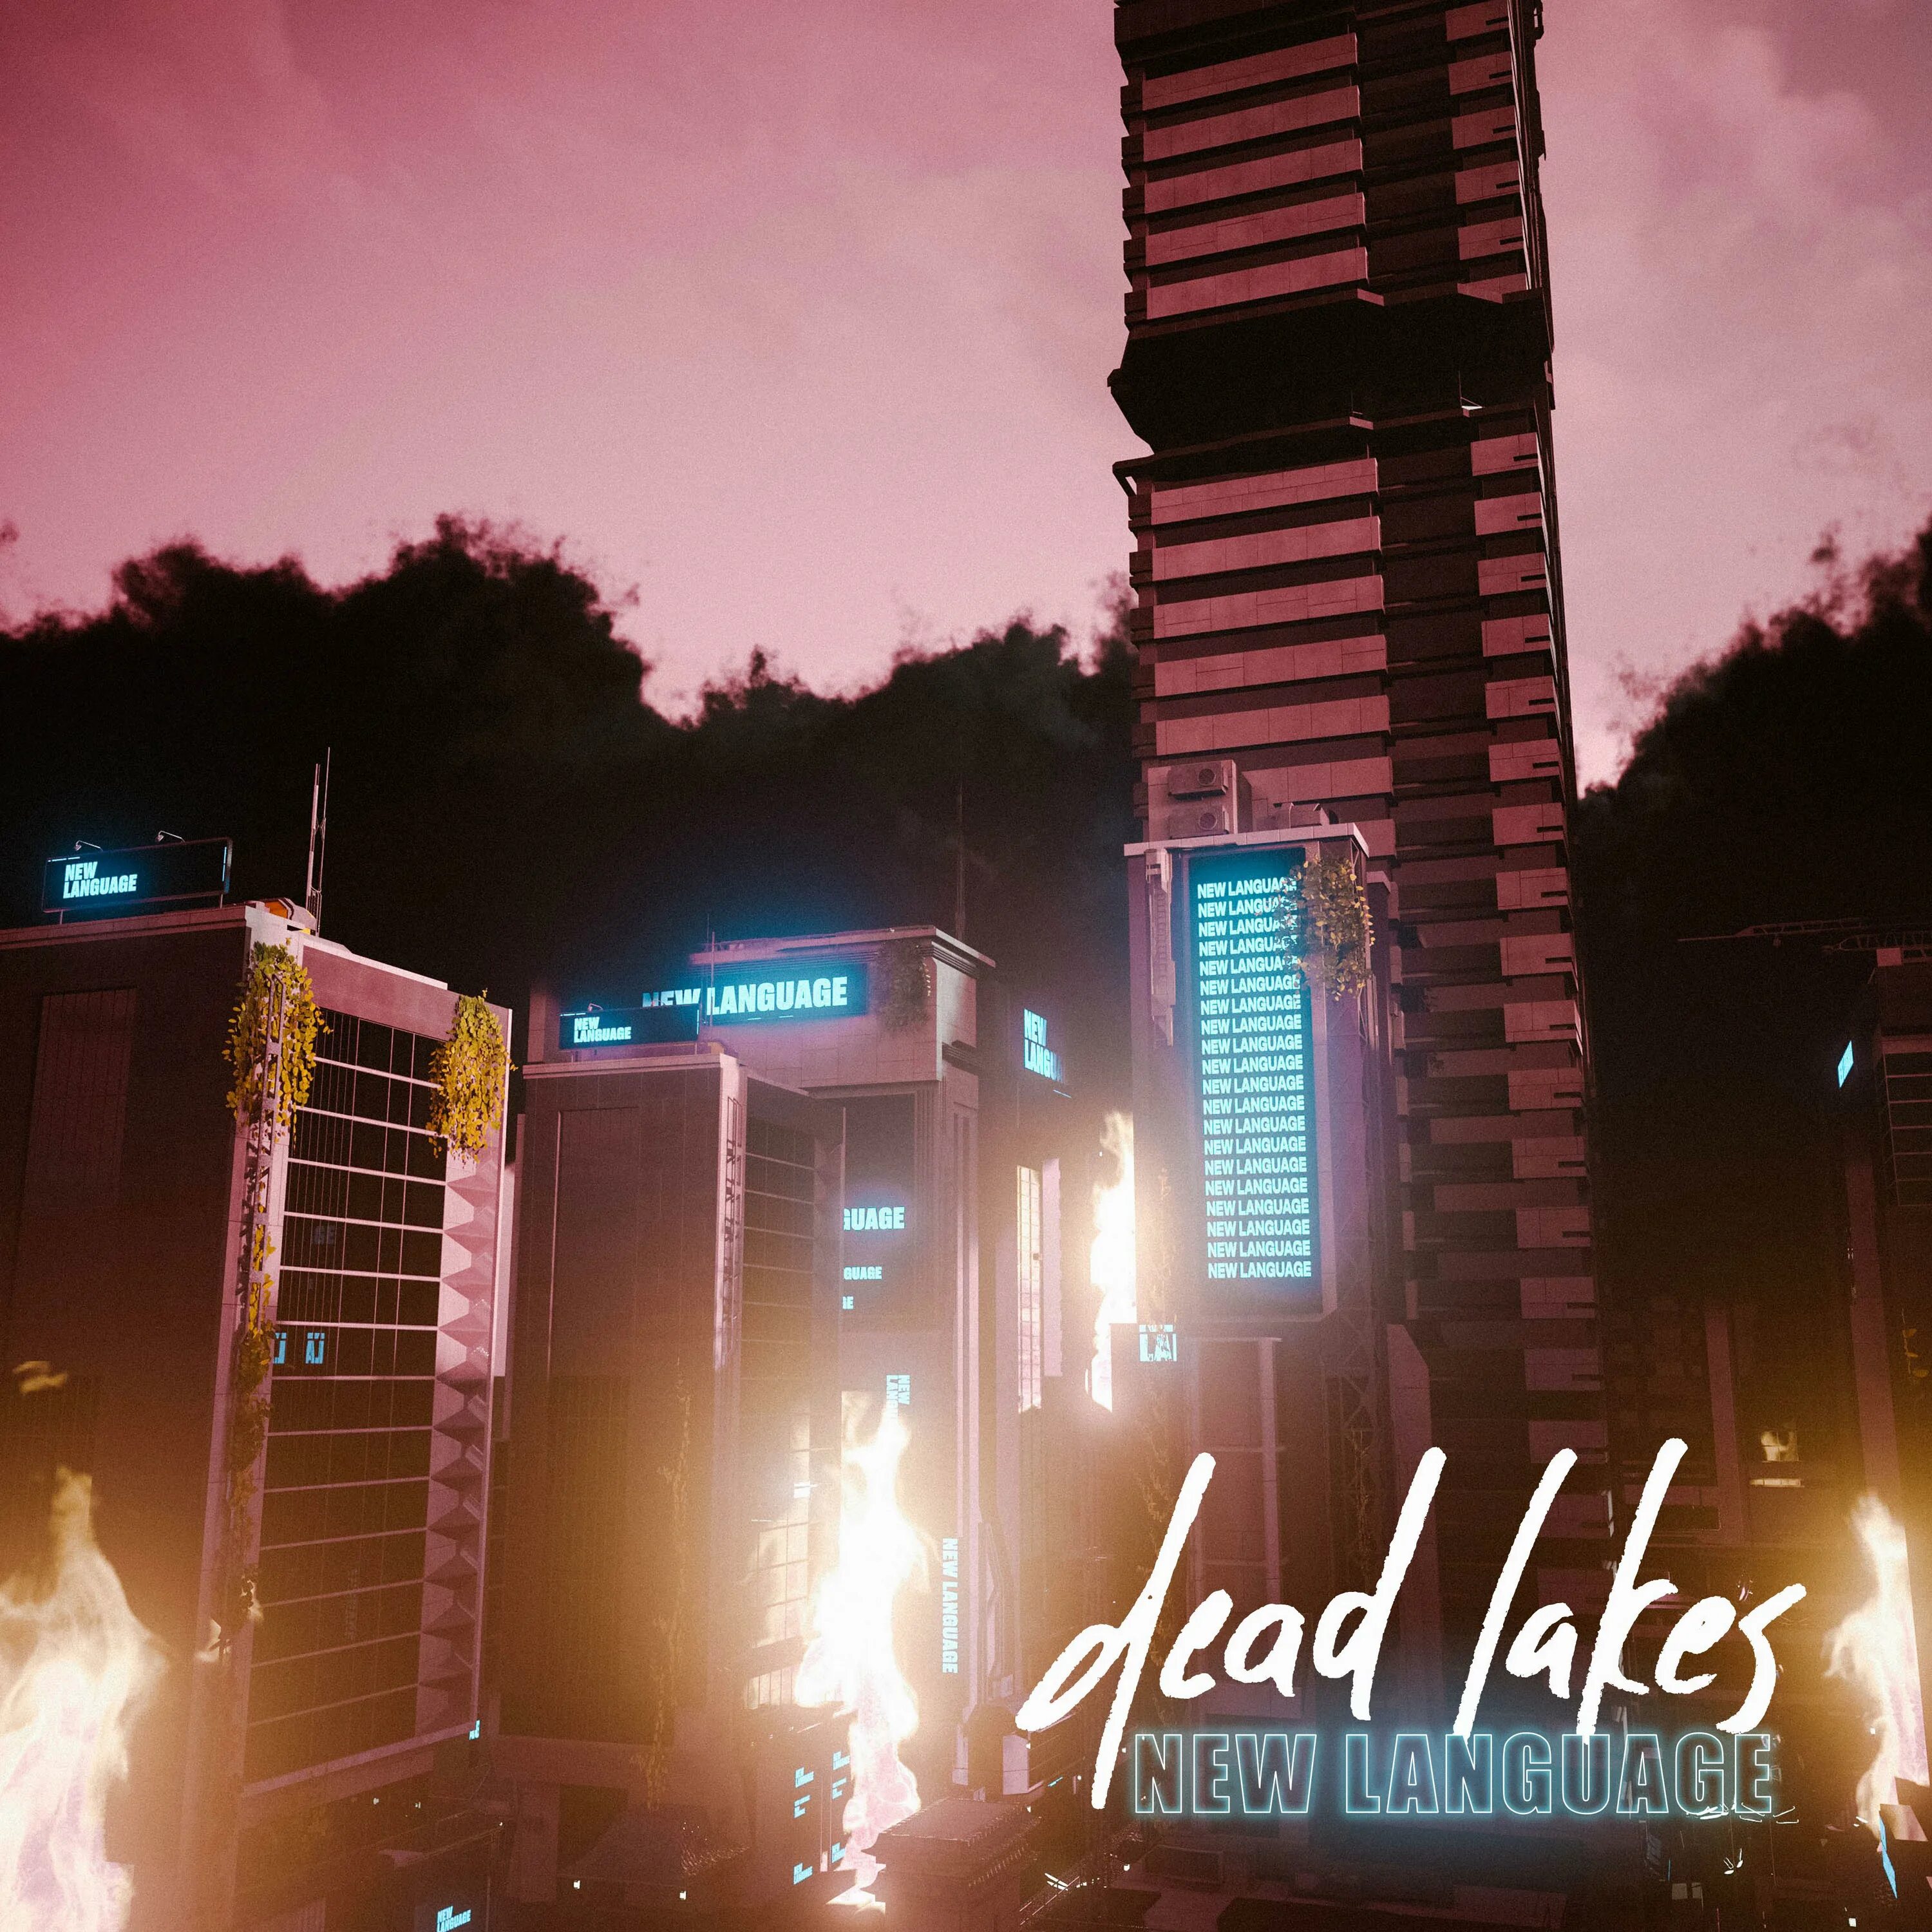 Dead Lakes группа. Dead Paradise треки. Dead Lakes tongue Planet album. Dead lakes